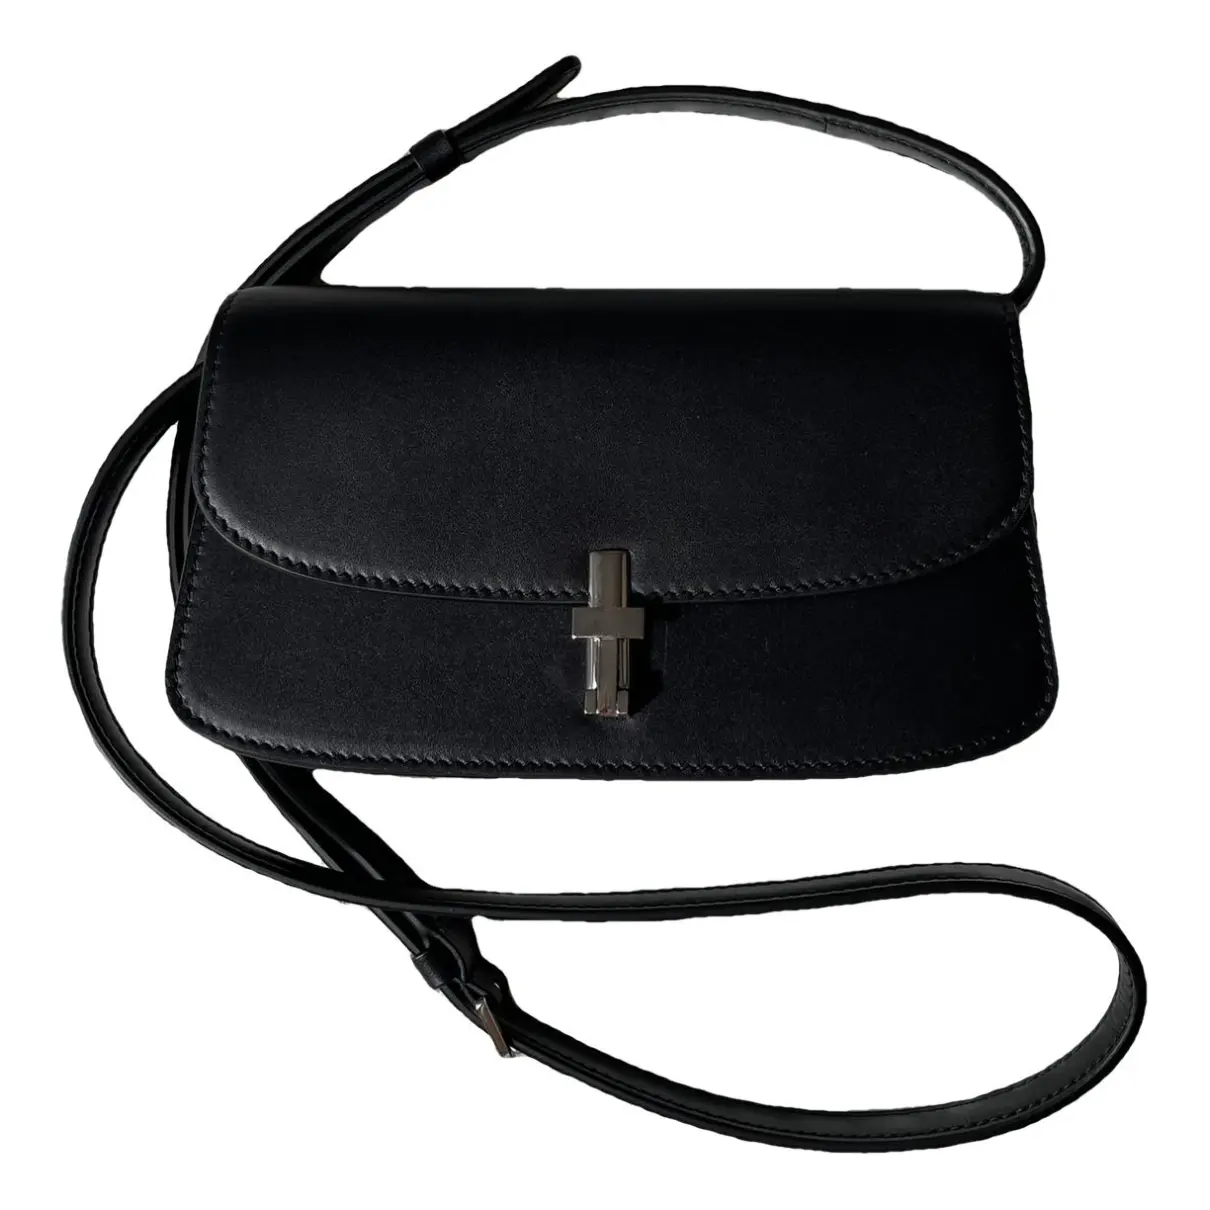 Sofia E/W leather crossbody bag